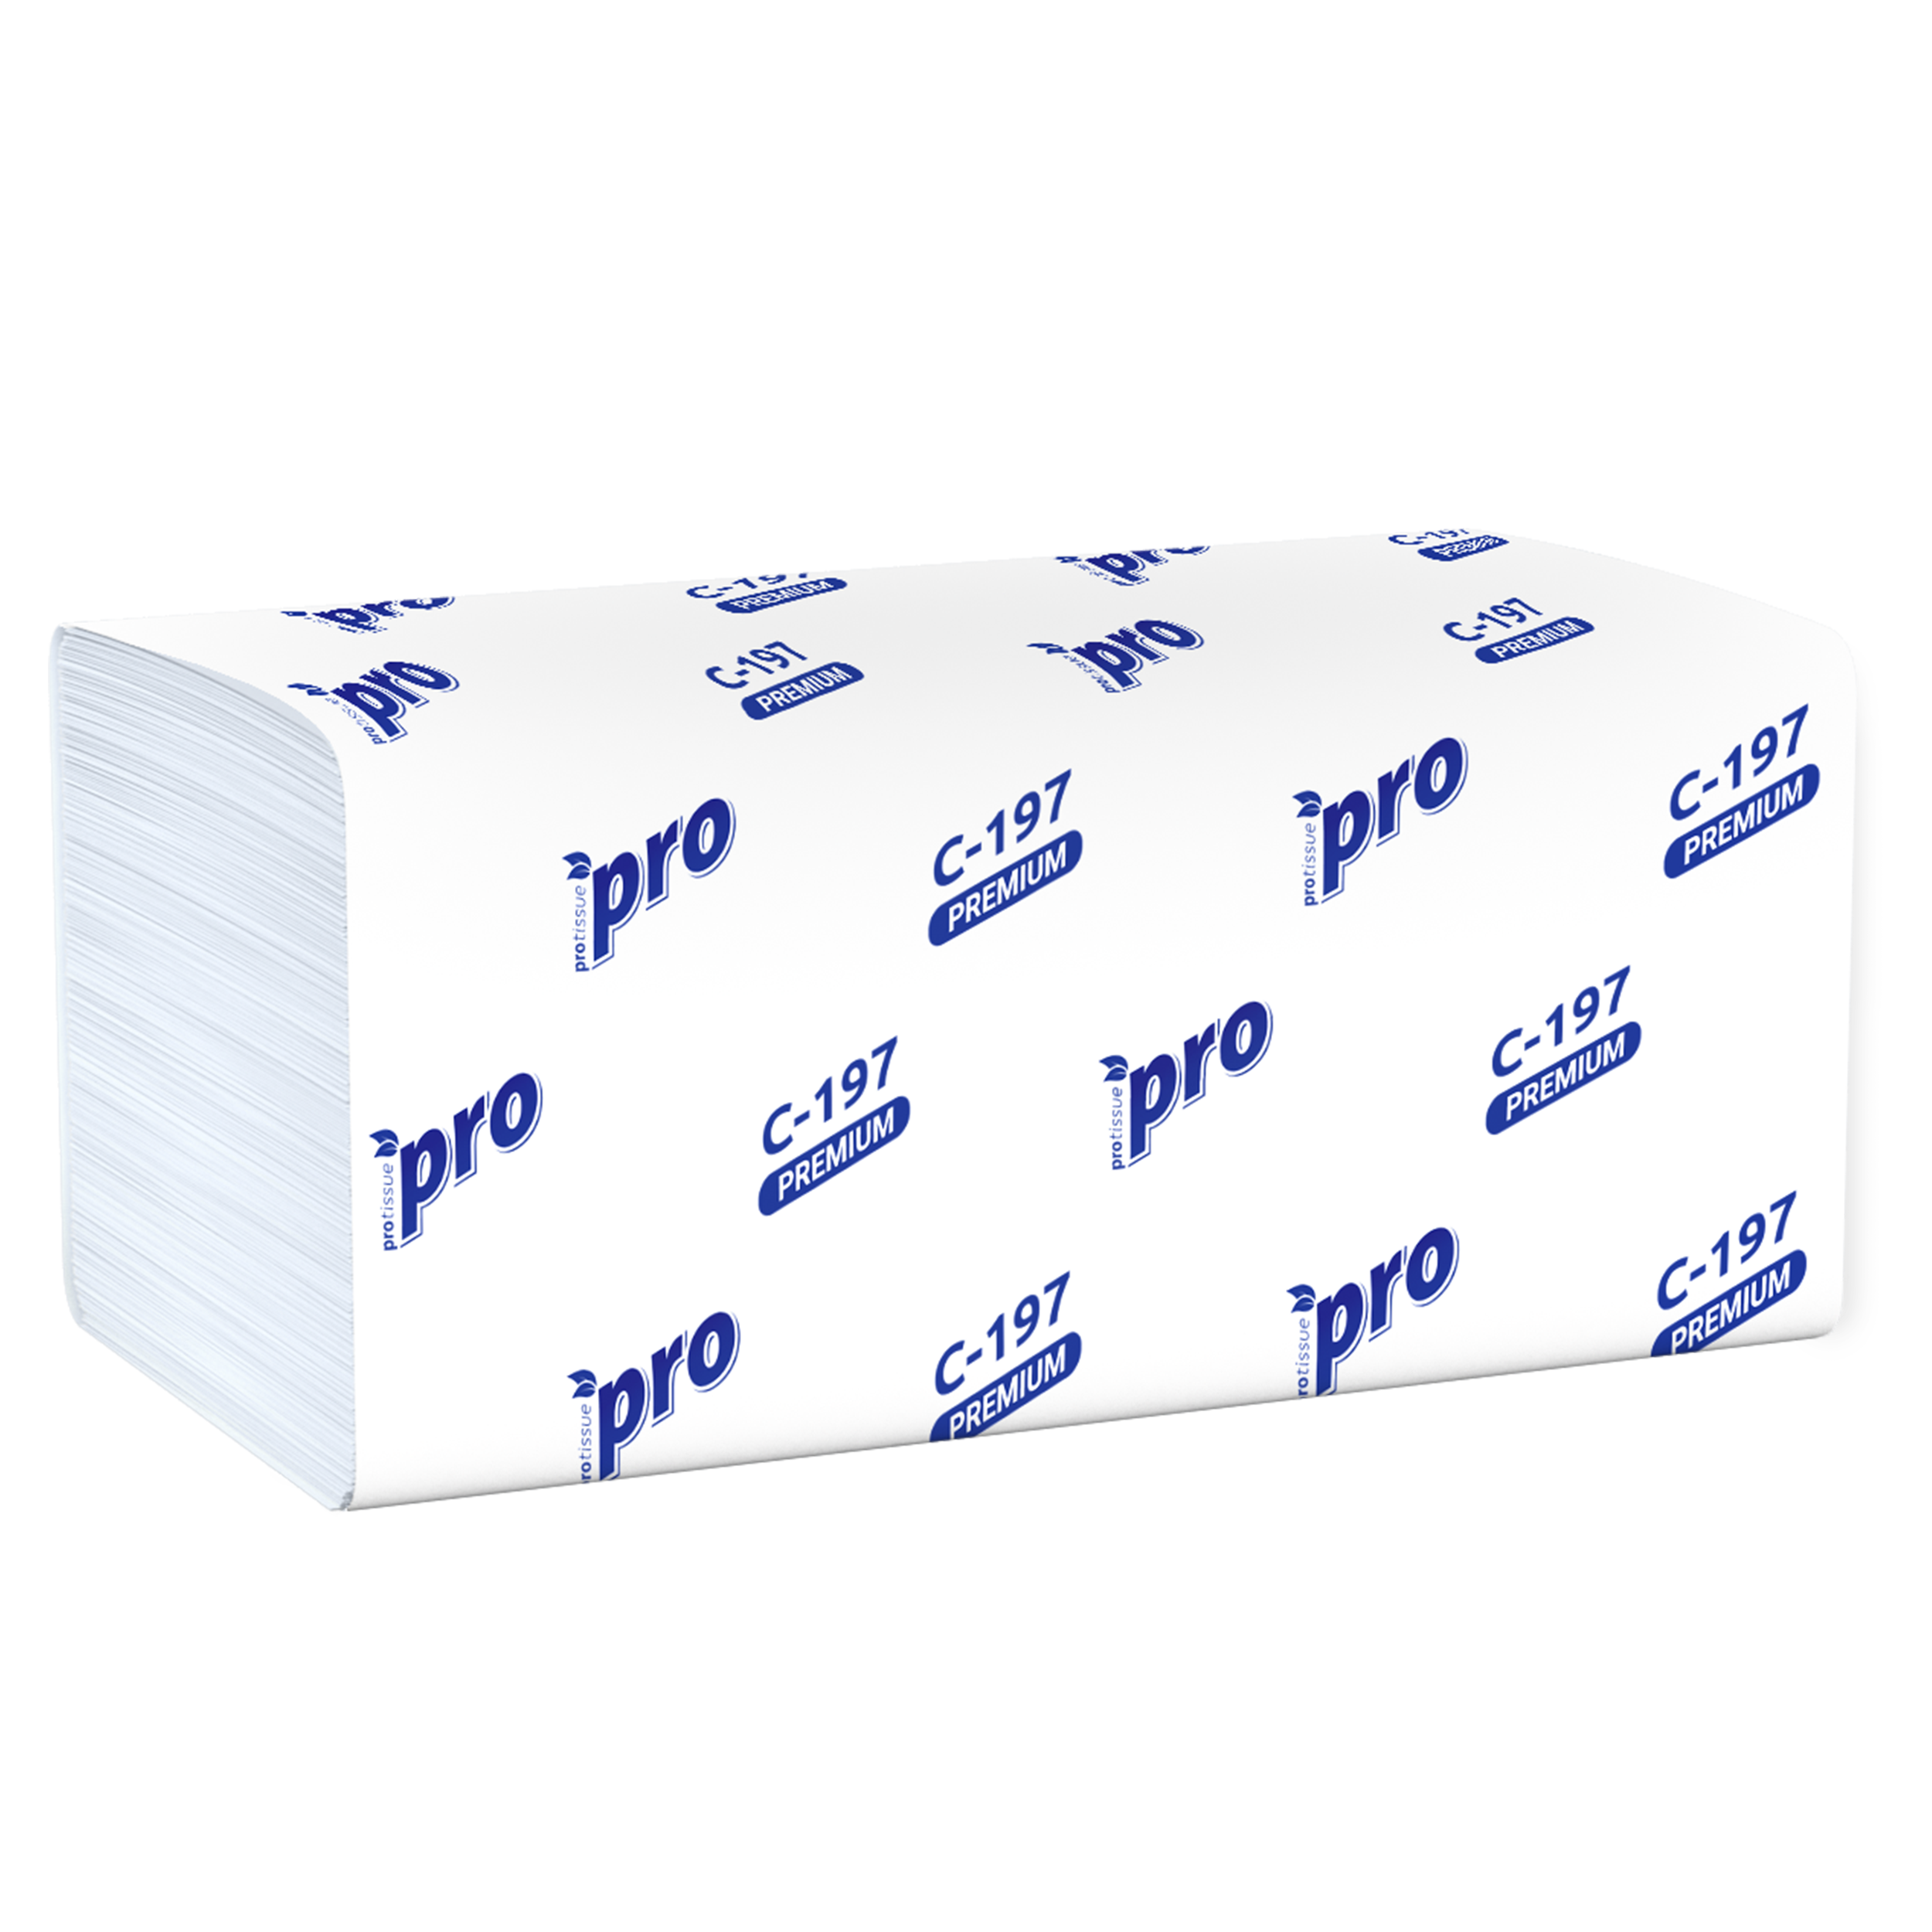 Бумажные полотенца листовые PROtissue V сложения 2 слойные белые 200 листов (артикул производителя C197)